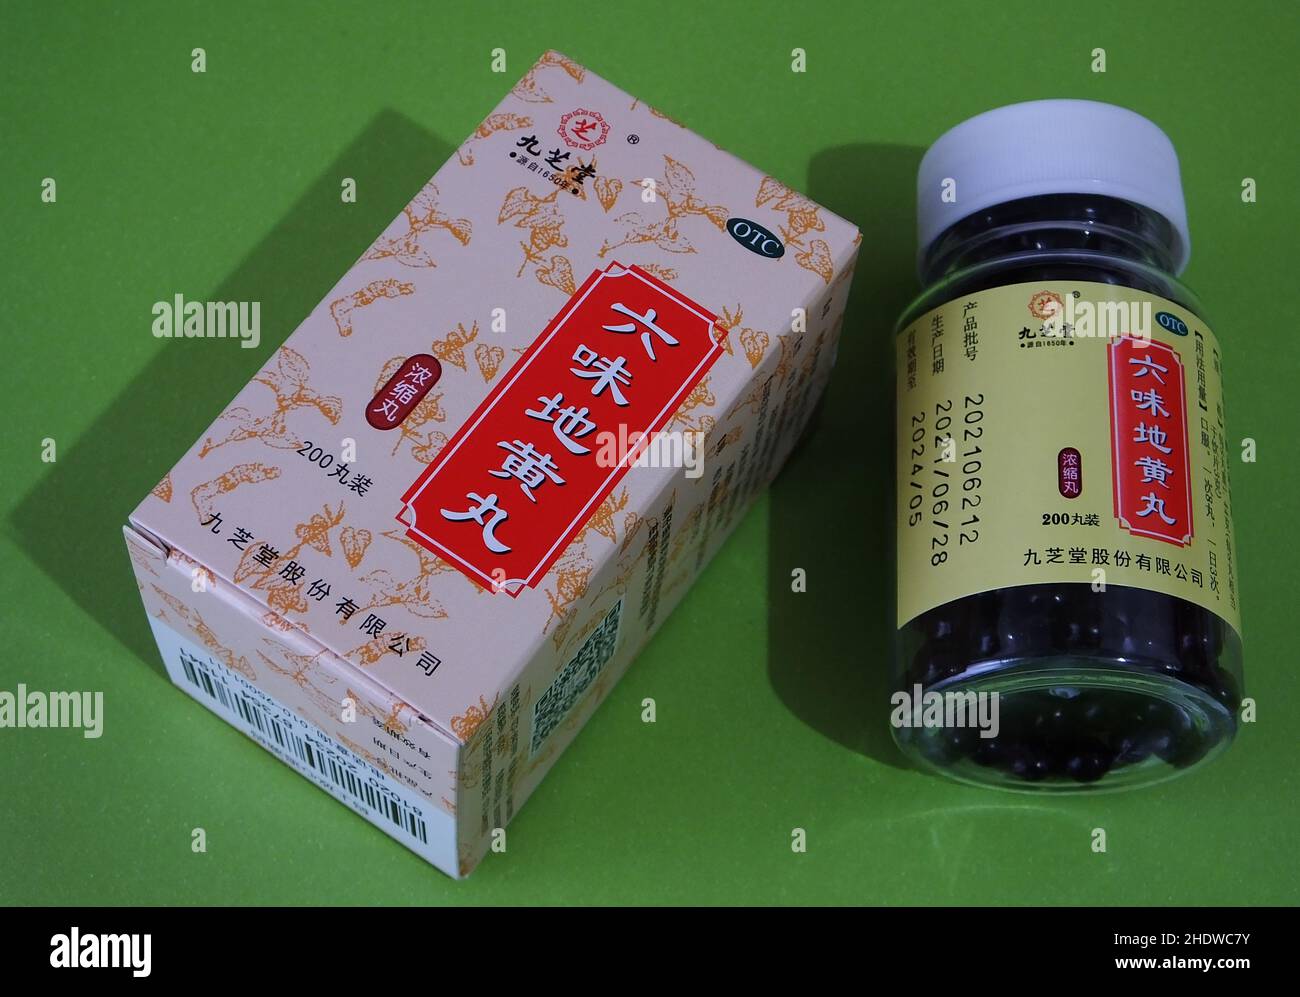 YICHANG, CHINE - 7 JANVIER 2022 - Un citoyen montre son médicament chinois breveté acheté à Yichang, province de Hubei, Chine, 7 janvier 2022. Banque D'Images